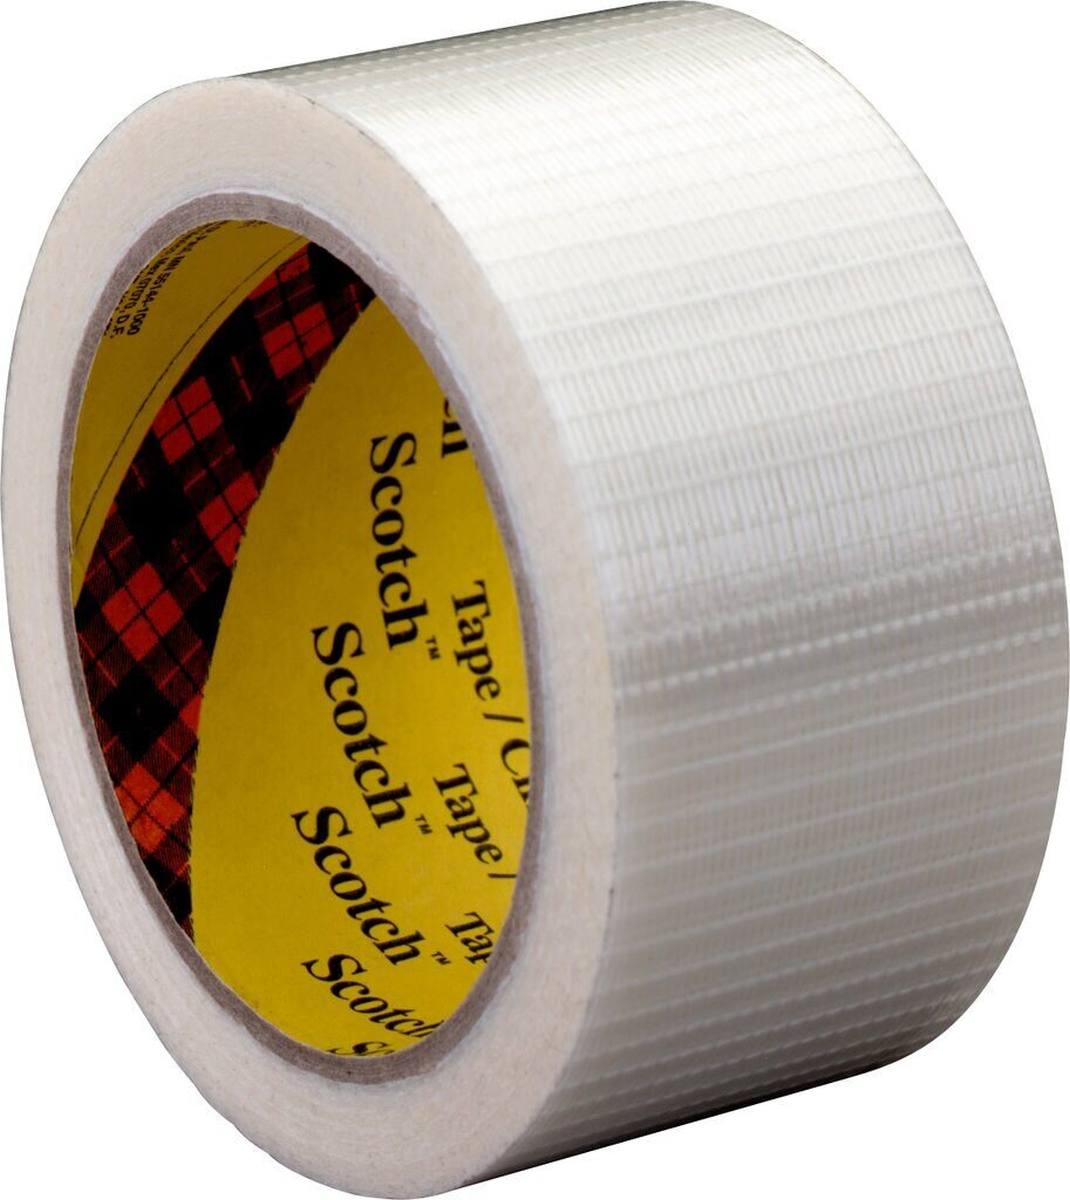 3M Scotch Filament Adhesive Tape 8959, trasparente, 25 mm x 50 m, 0,145 mm